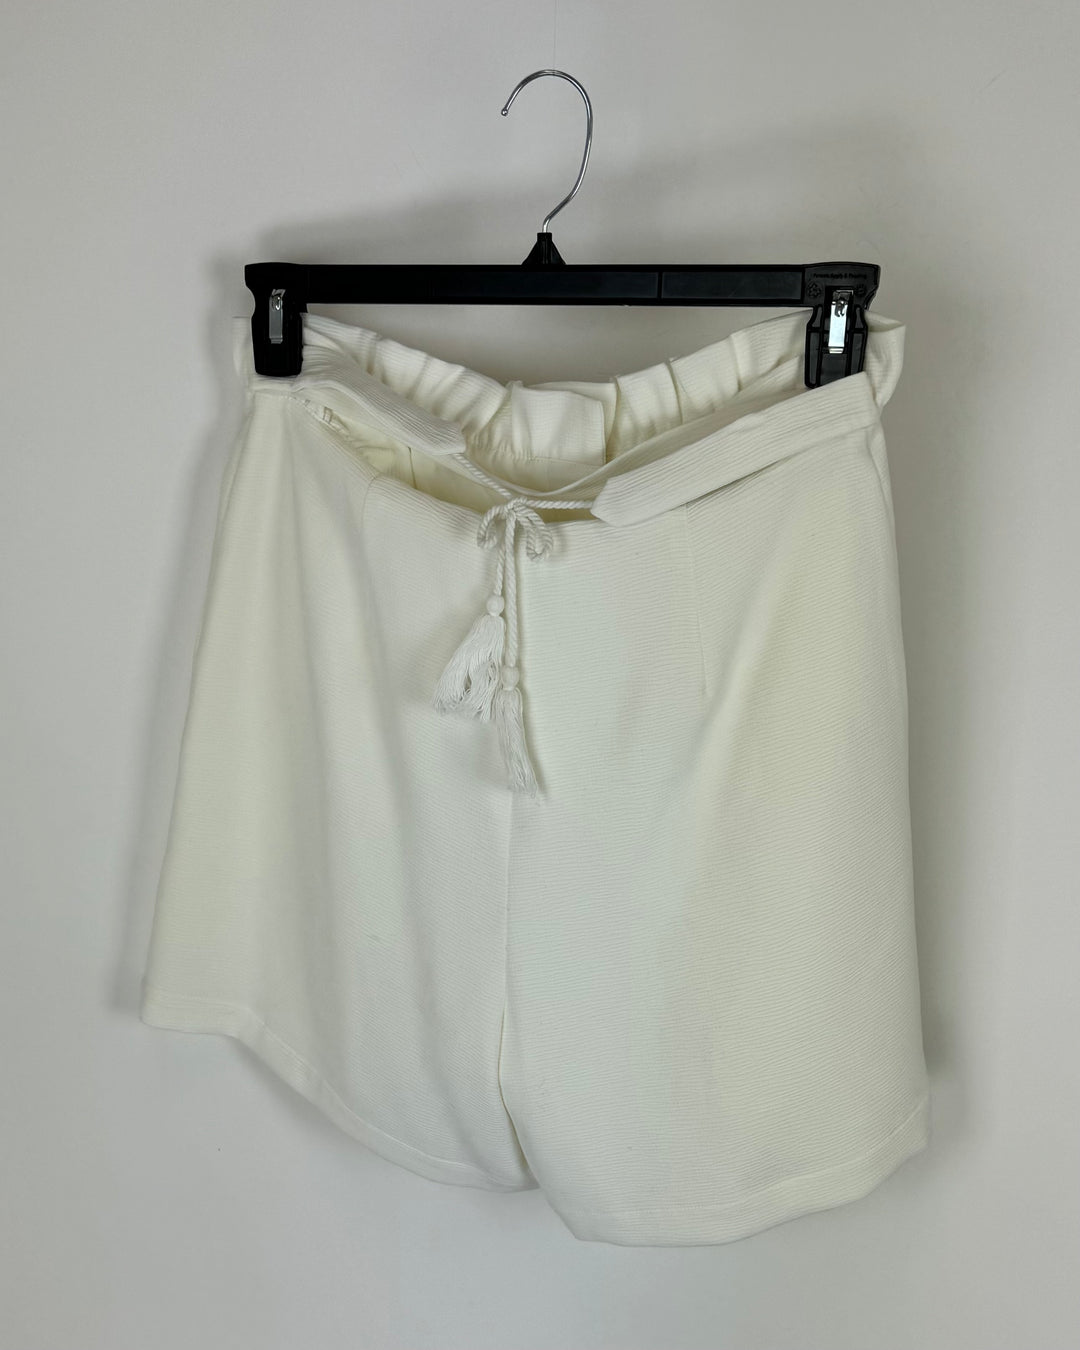 White Tassel Tie Shorts - Size 8/10